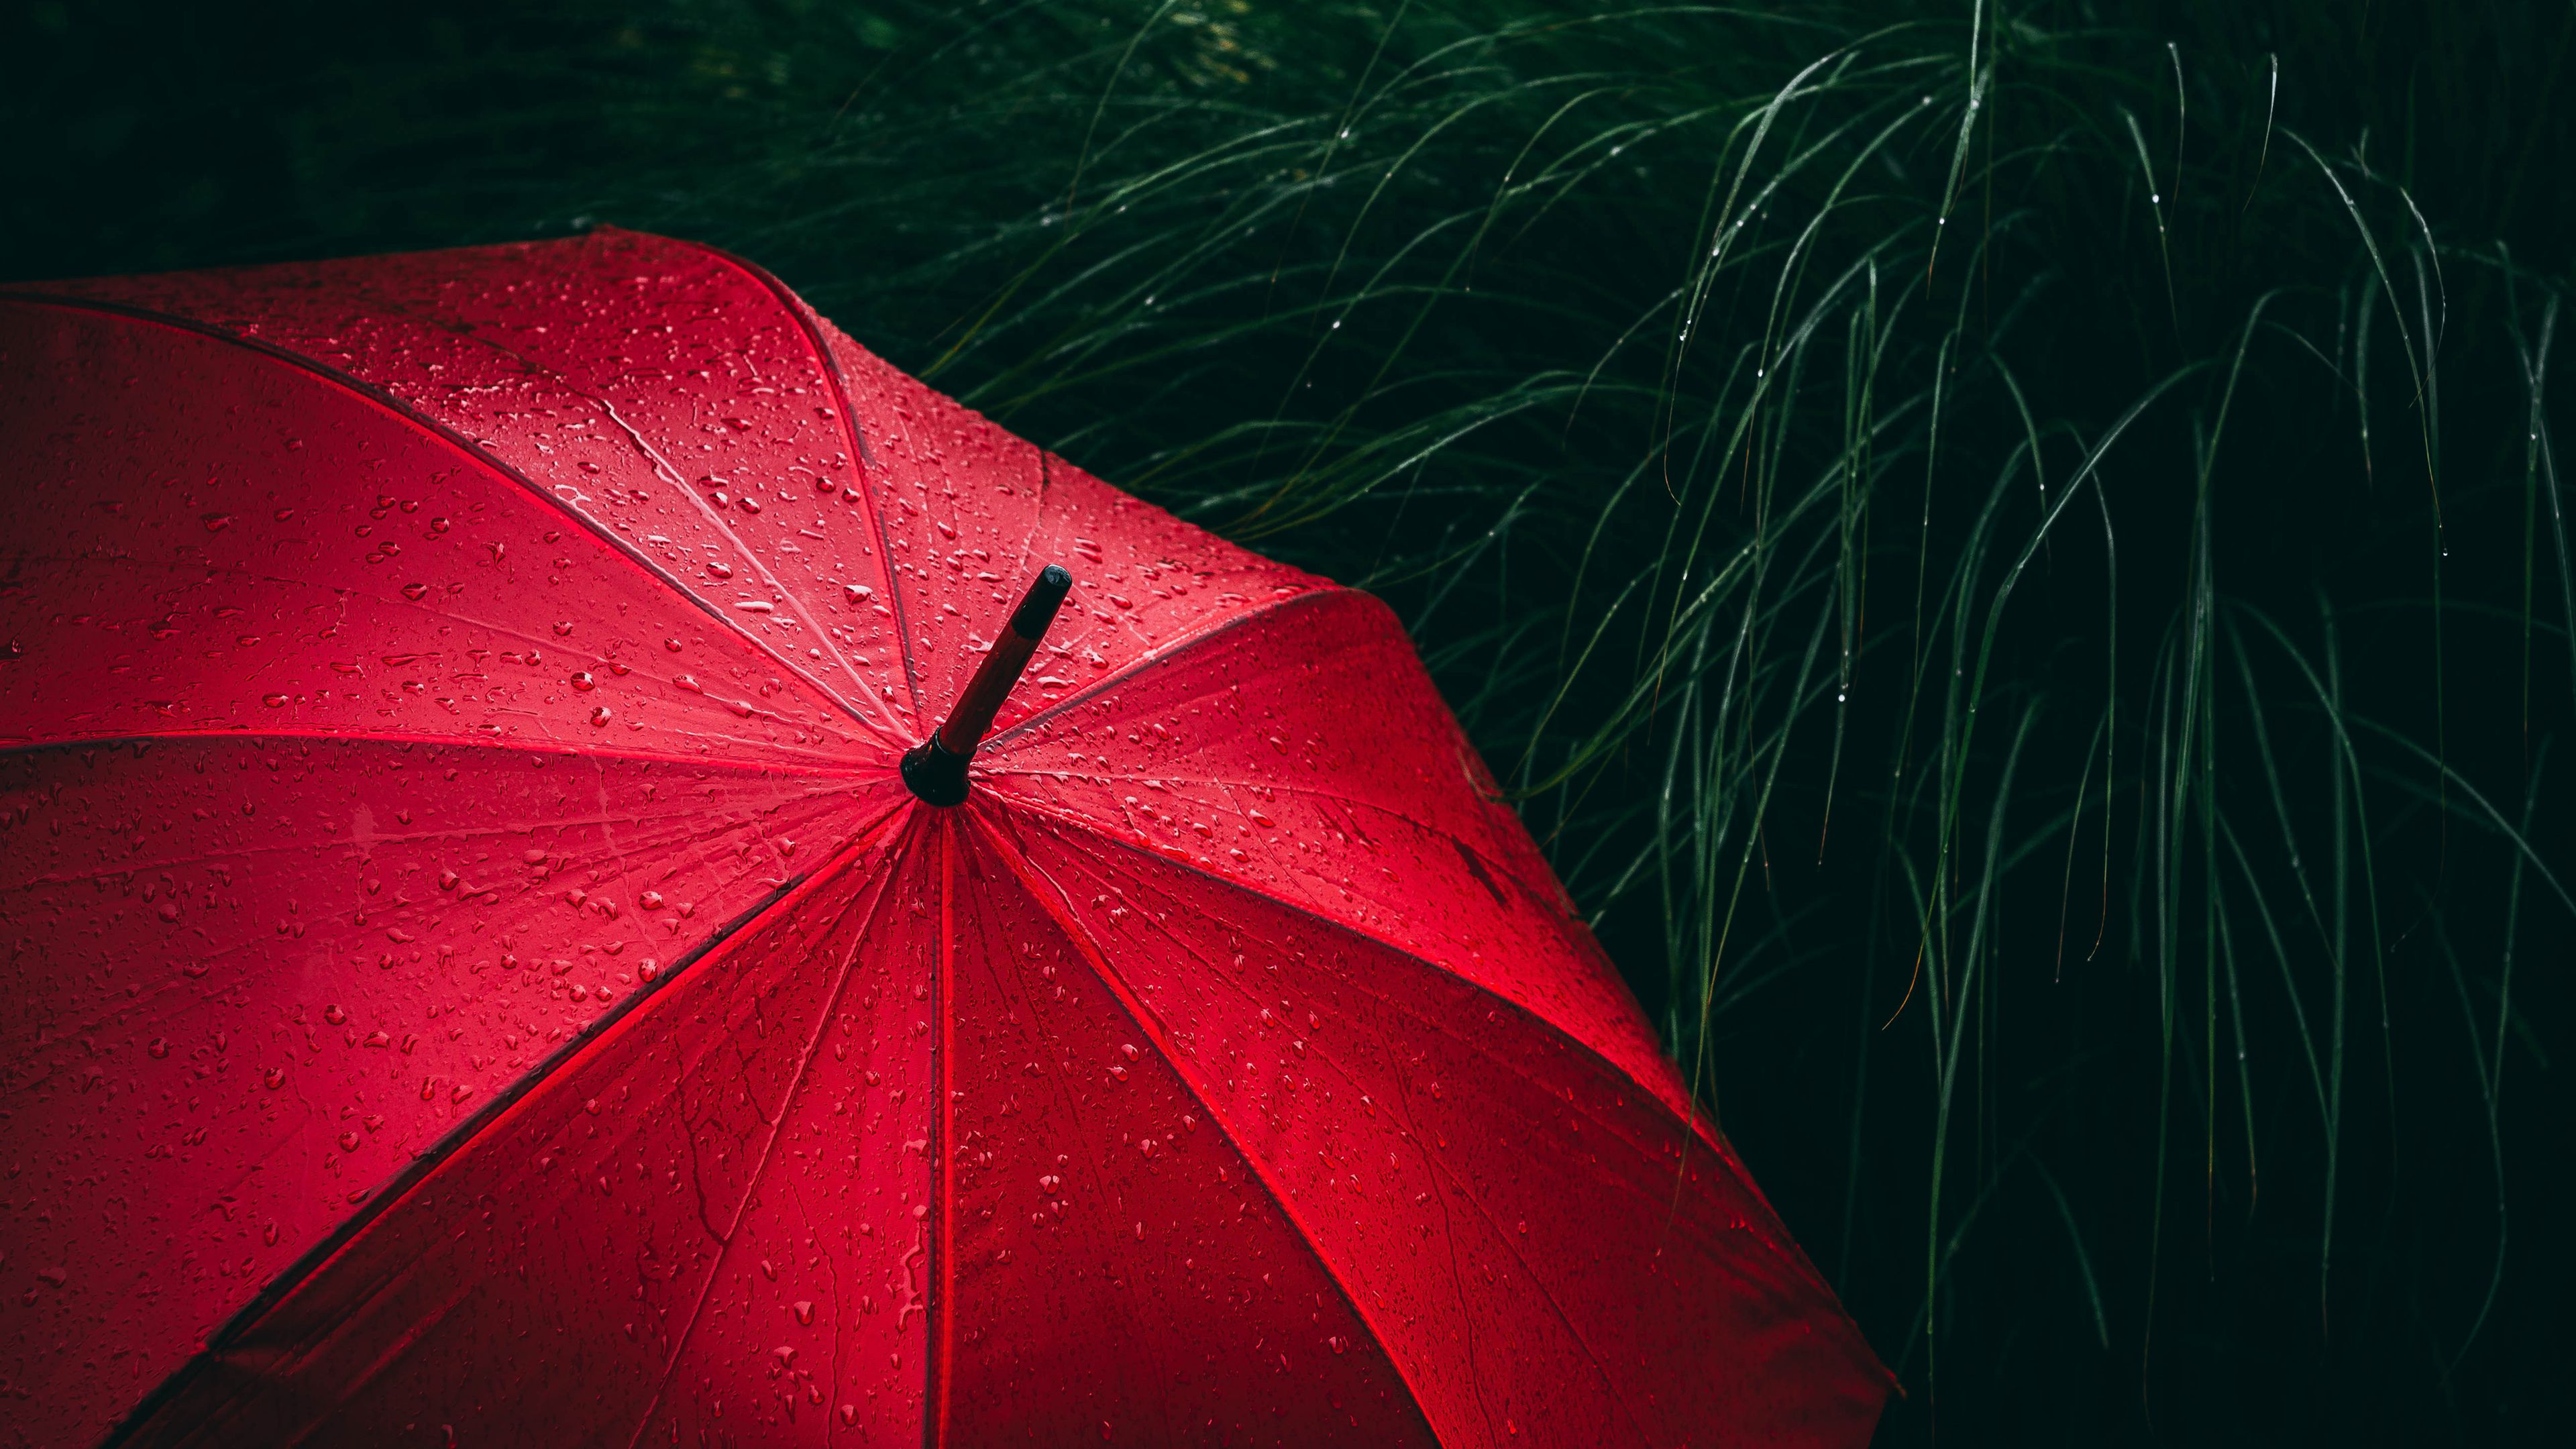 Umbrella, Red, Rain droplets, Rainy day, 4k Free deskk wallpaper, Ultra HD